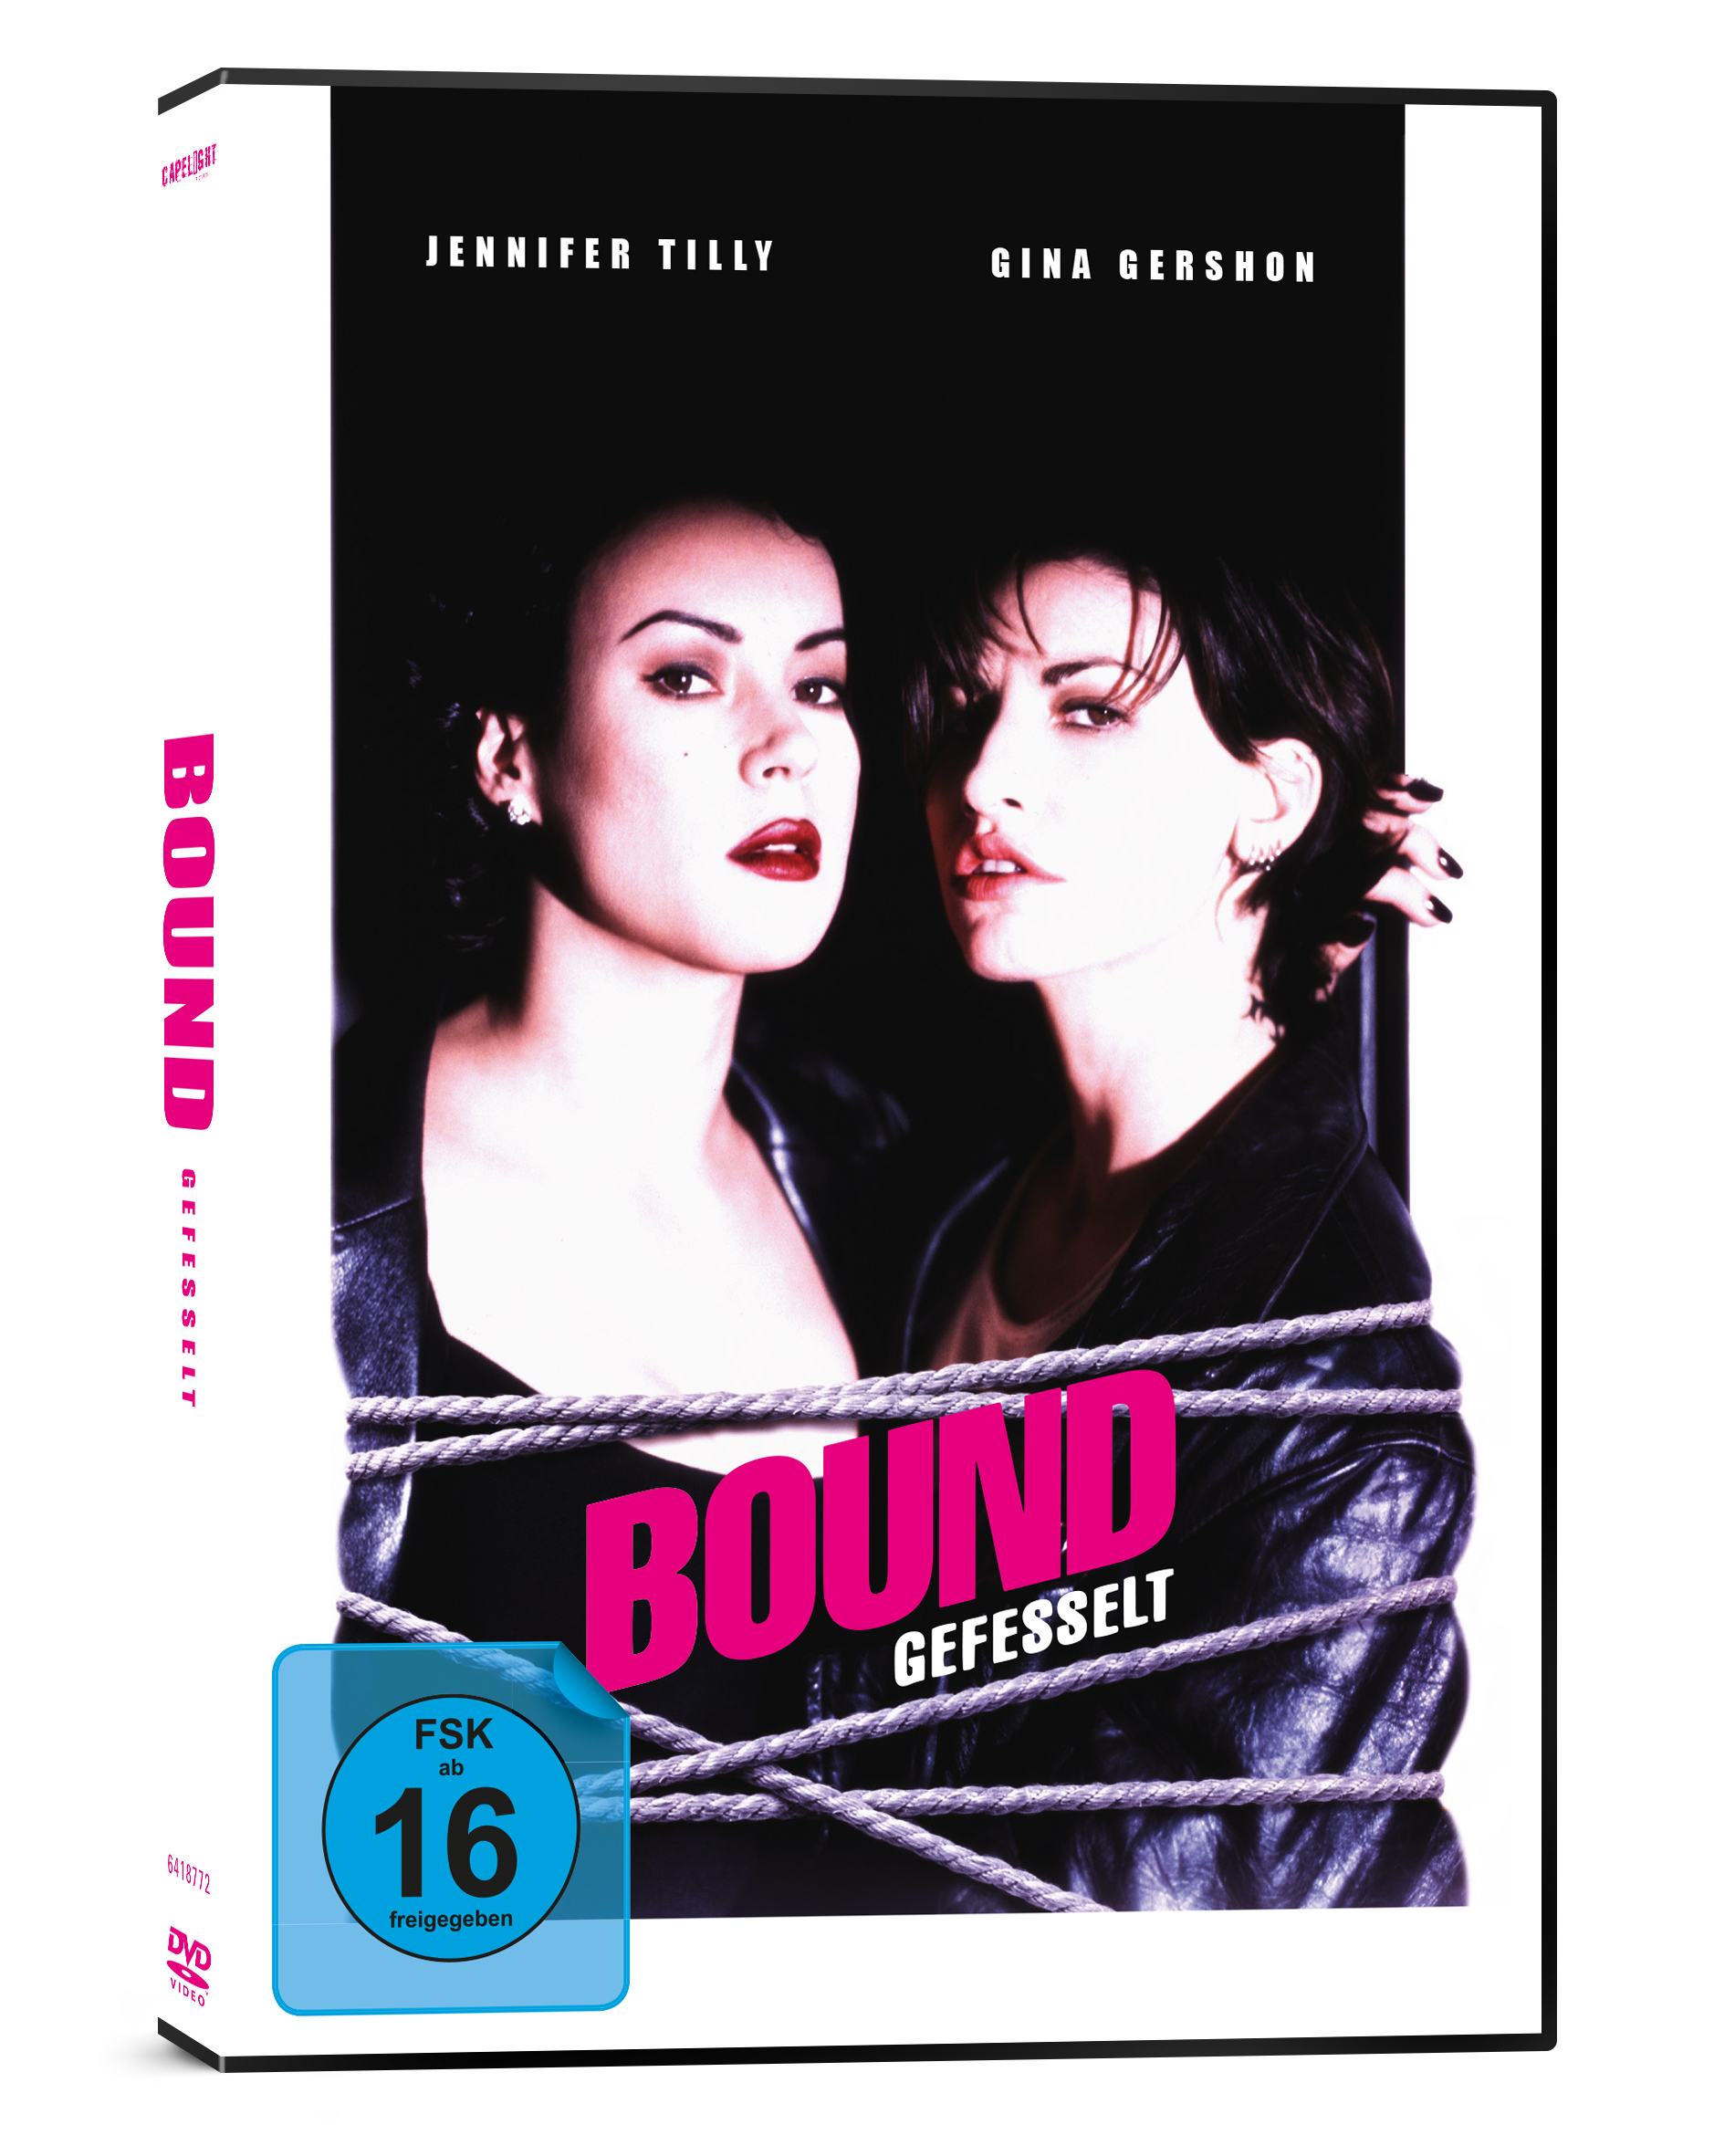 Bound (Director's Cut)